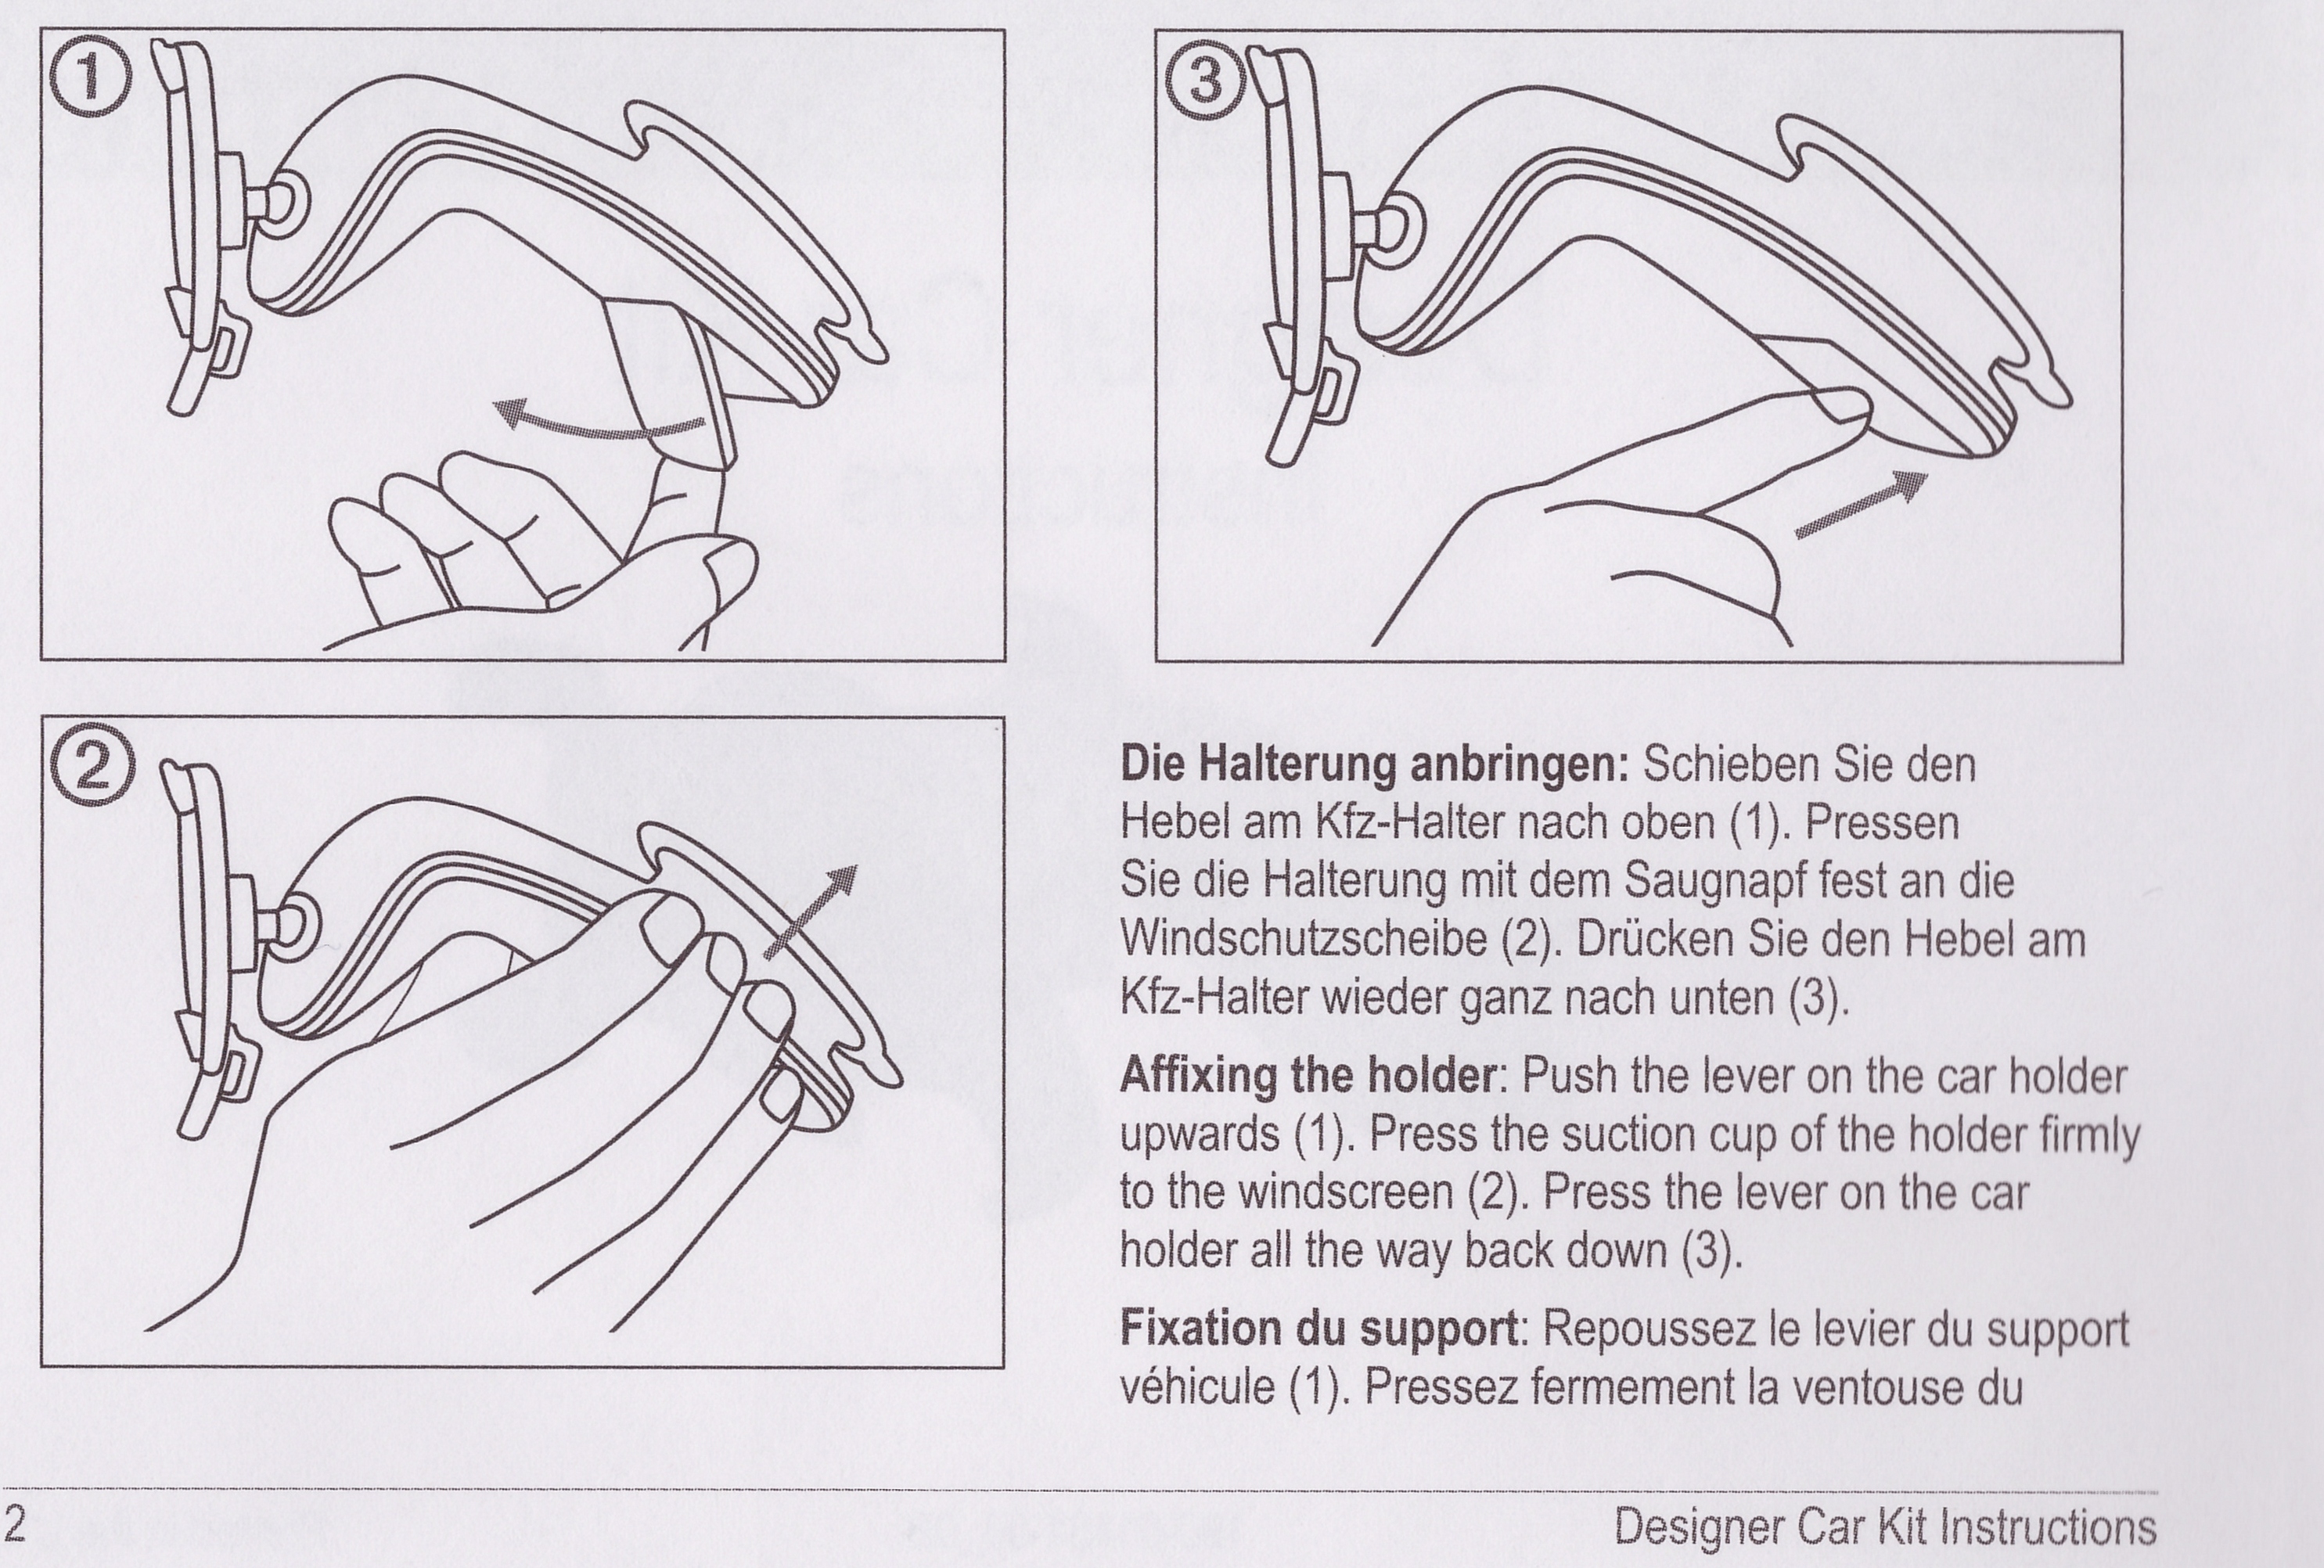 Инструкция поможет правильно установить крепление Garmin для iPhone 4/4S с зарядкой на стекло